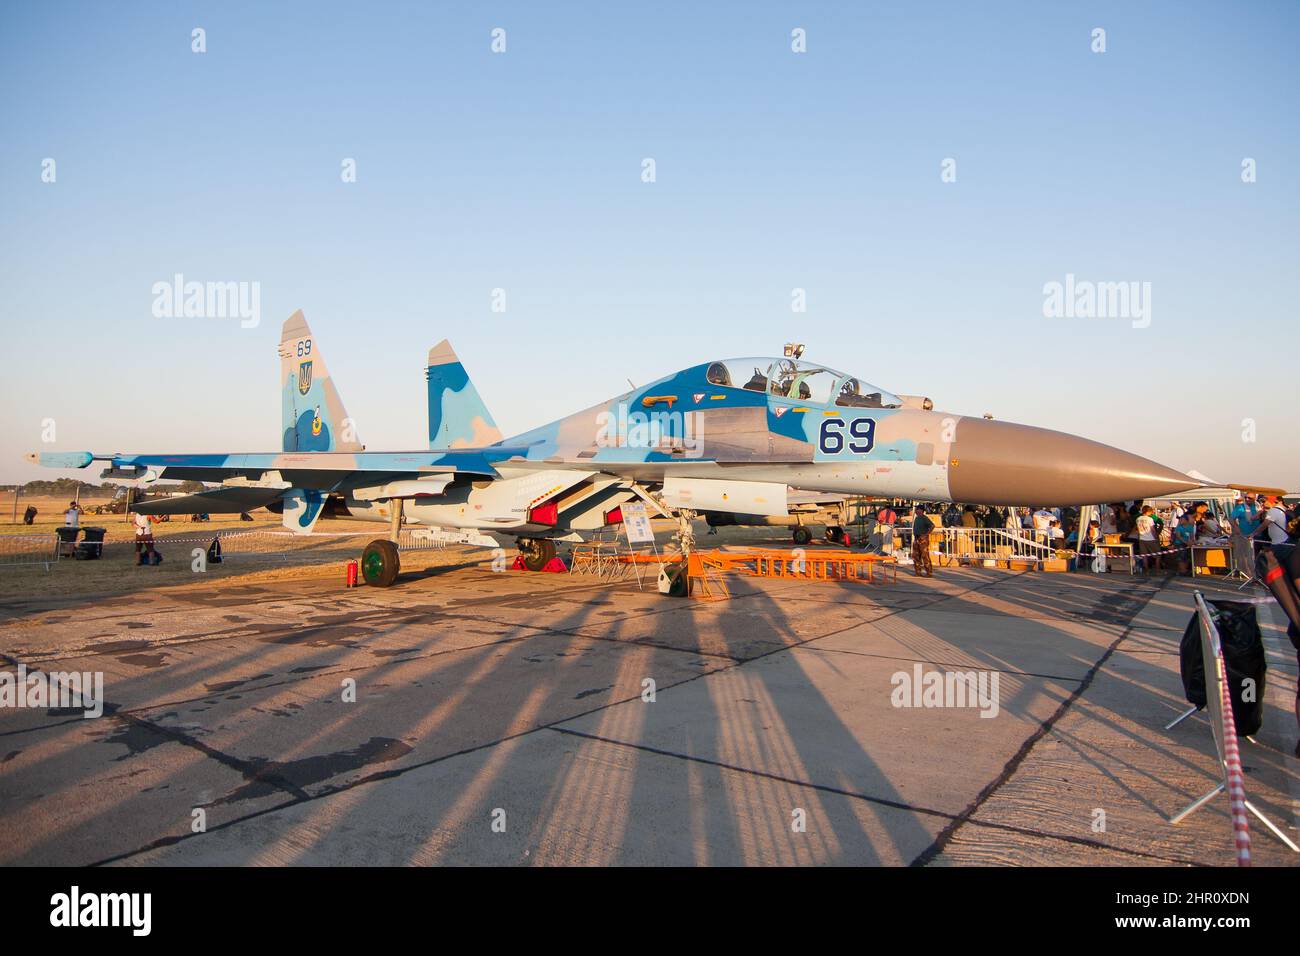 Forza aerea Ucraina Sukhoi su-27 jet militare a terra ad un'esposizione aerea Foto Stock